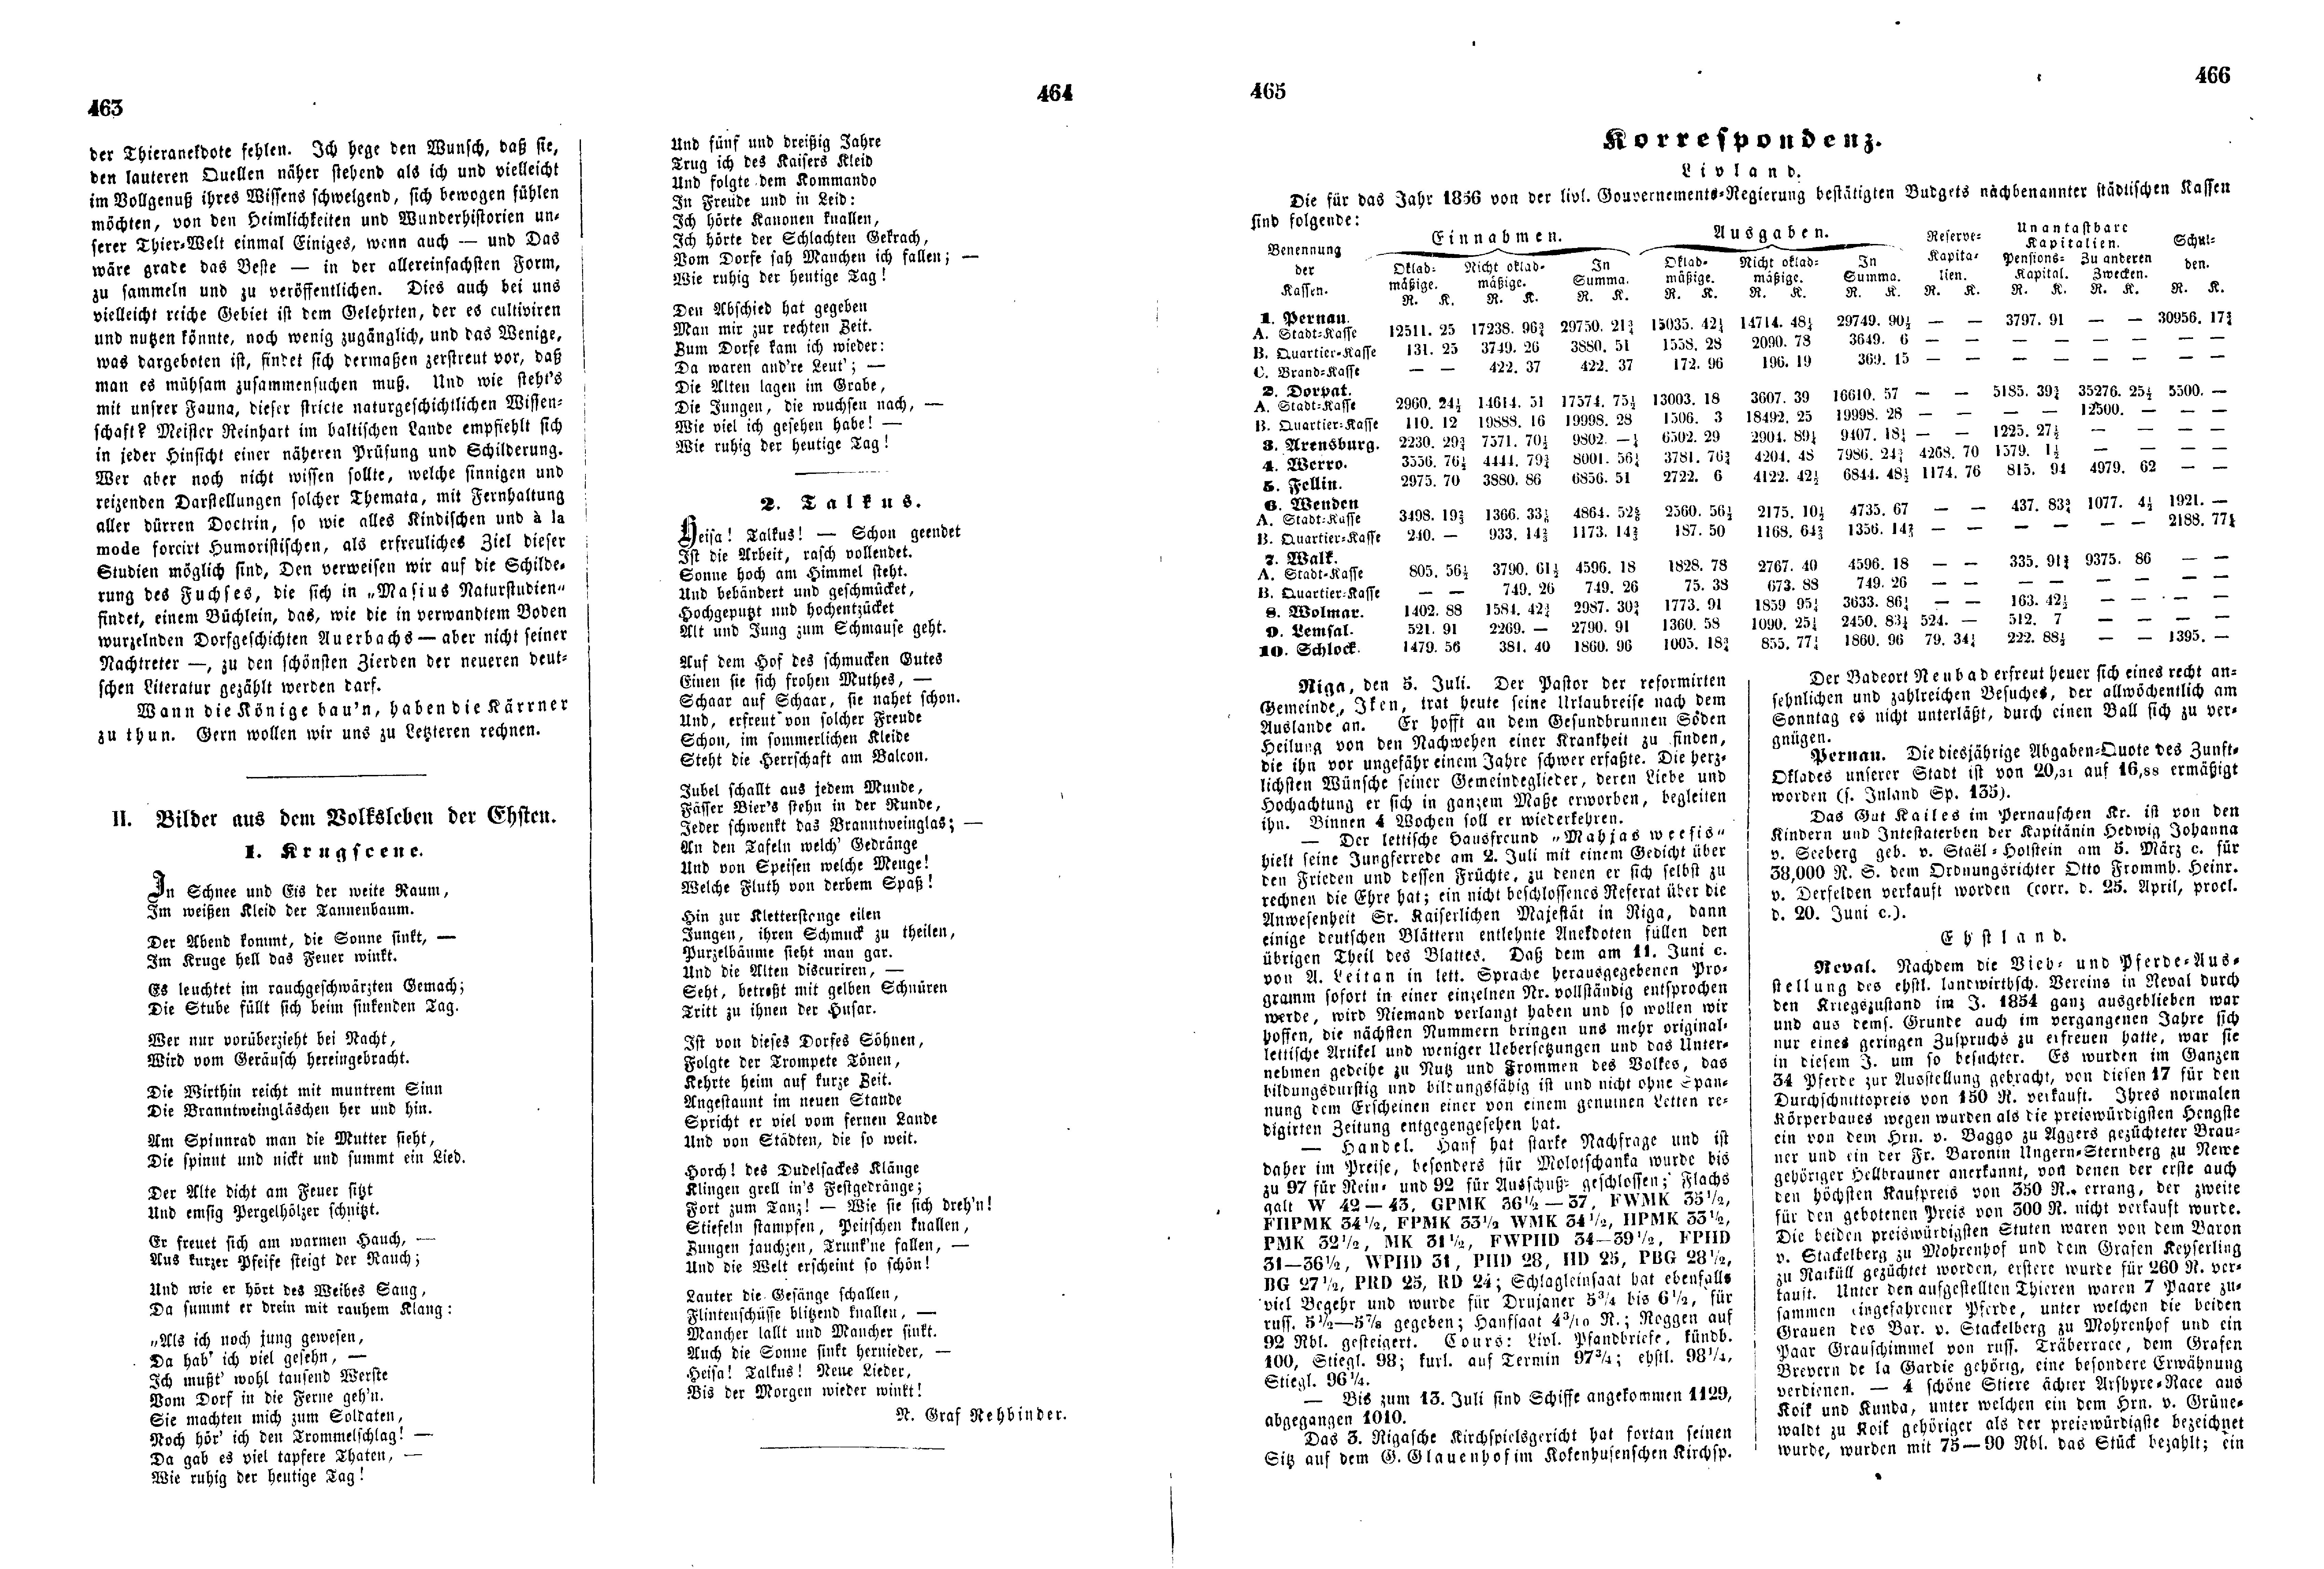 Krugscene (1856) | 1. (463-466) Põhitekst